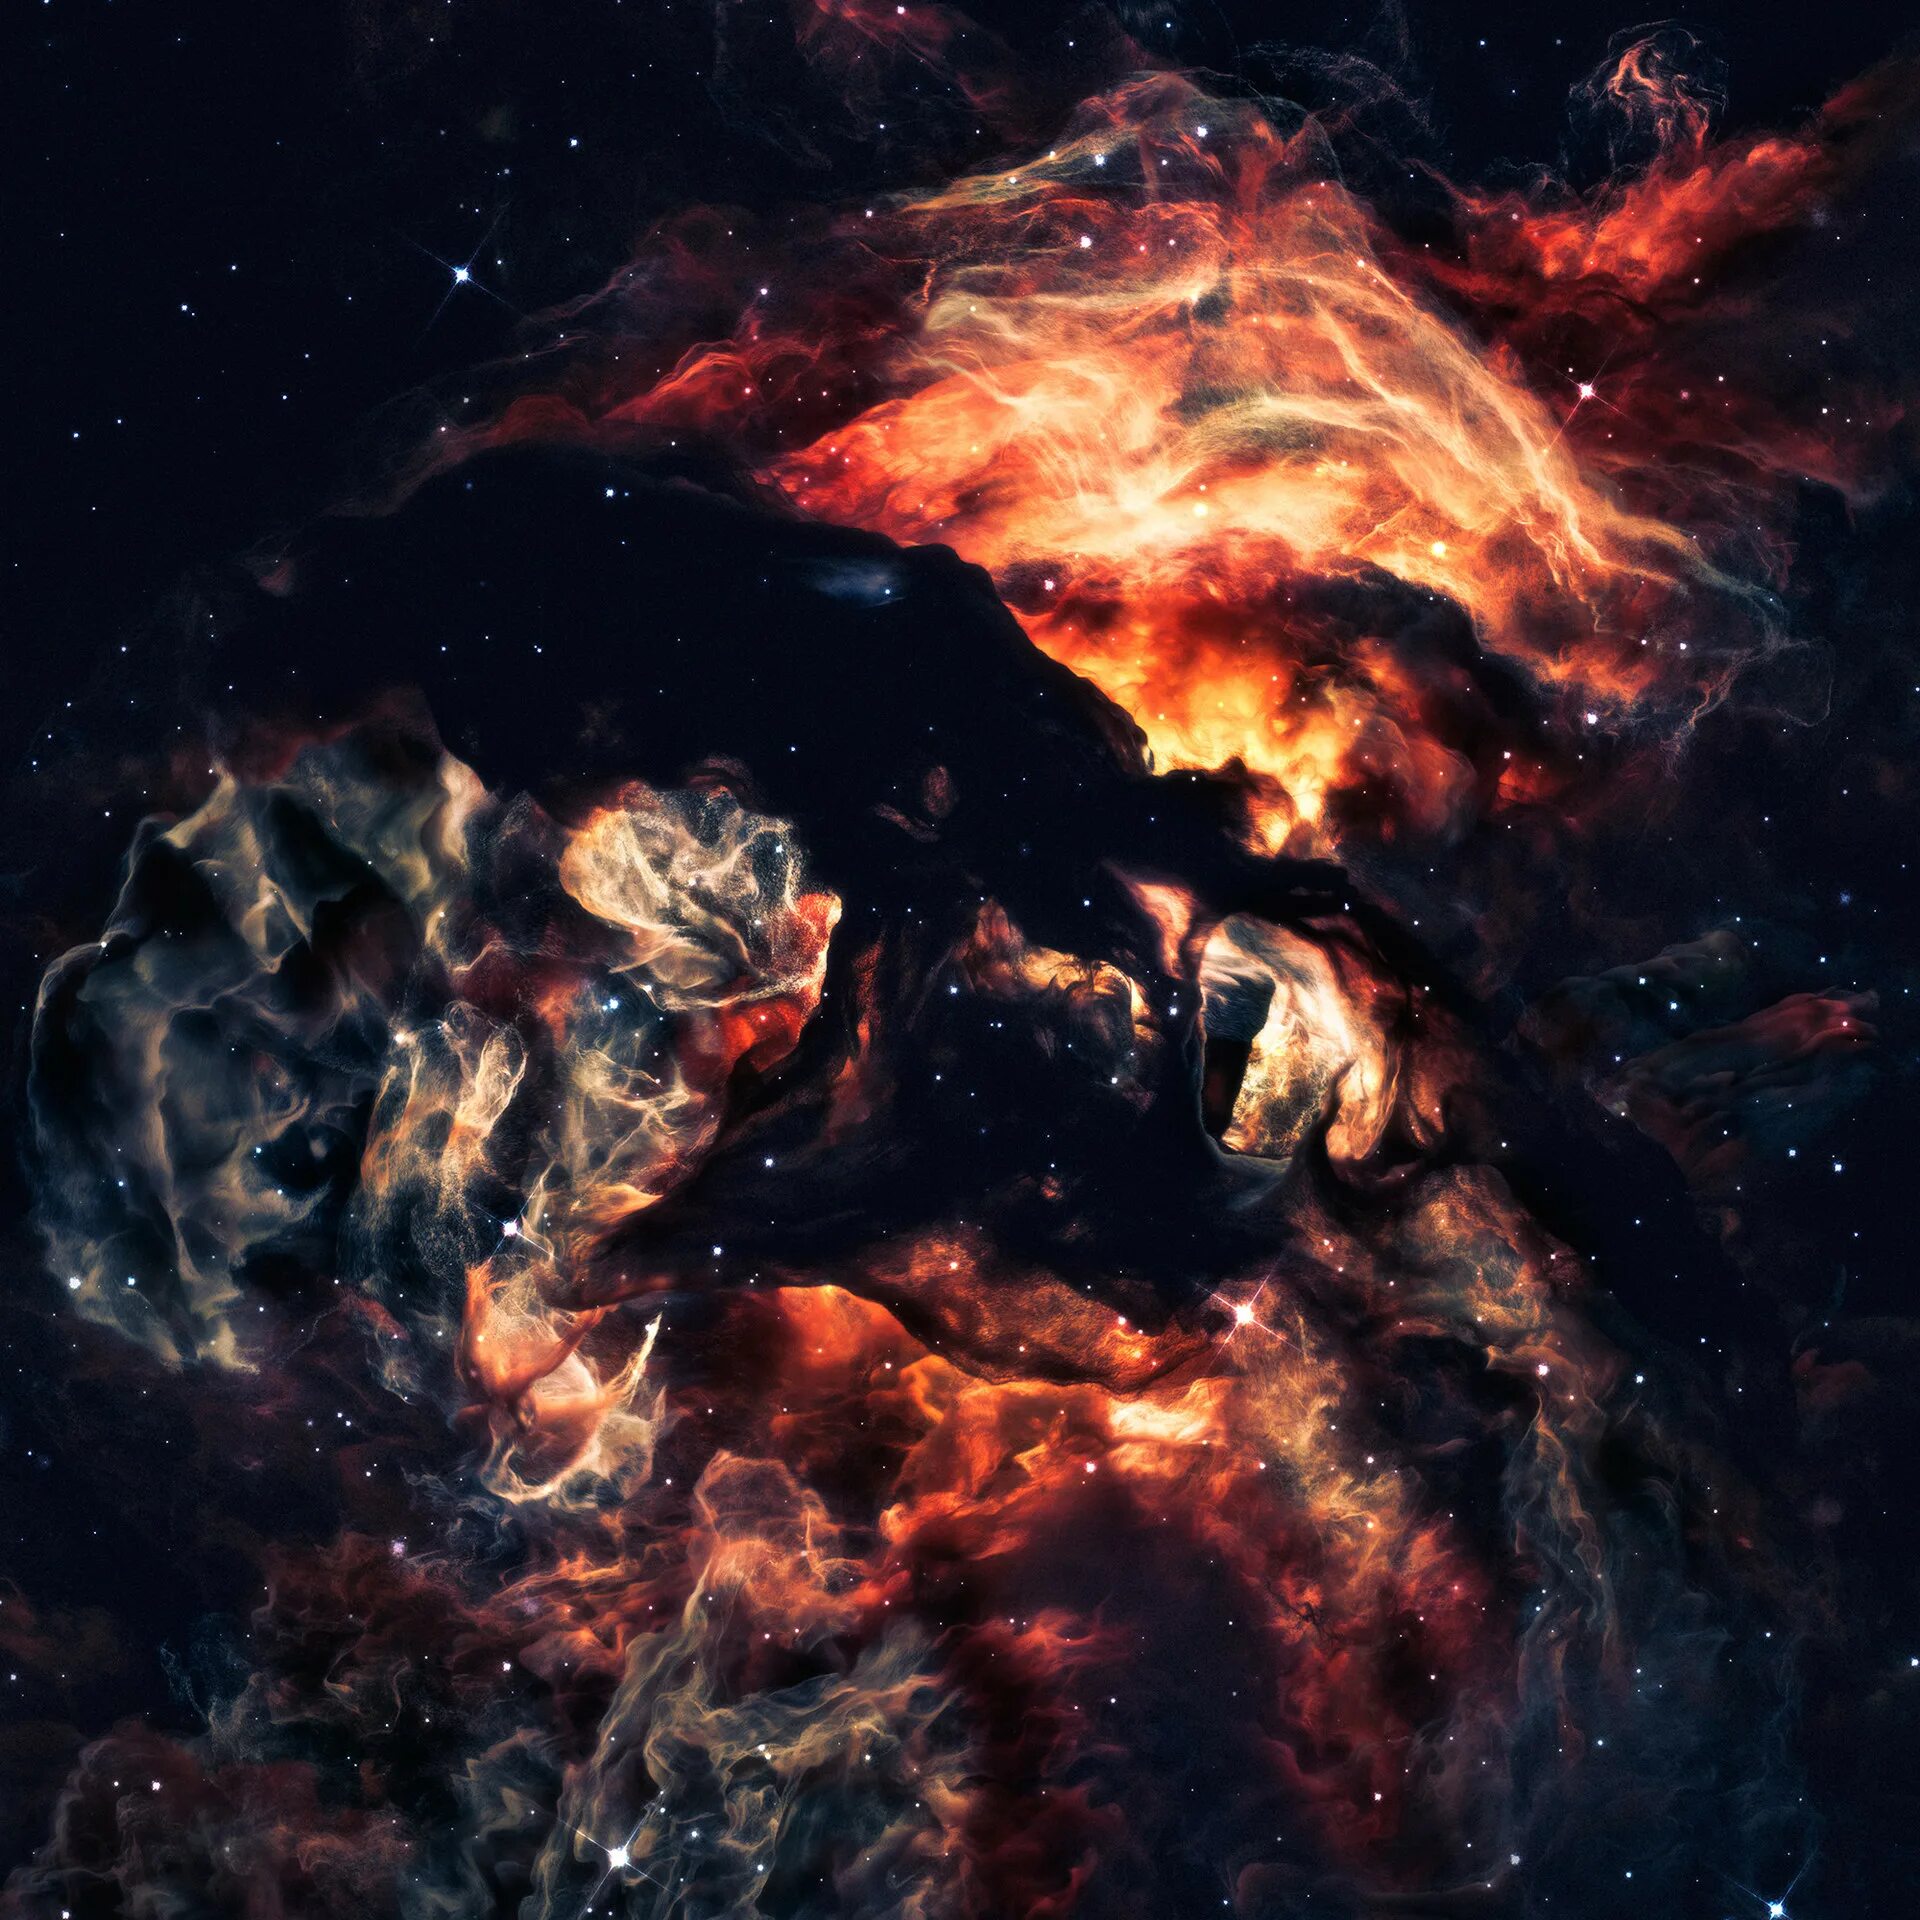 Космически невероятная. Невероятный космос. Теун Ван дер Залм туманности. Разрушенная Галактика арт. Невероятные фото космоса.